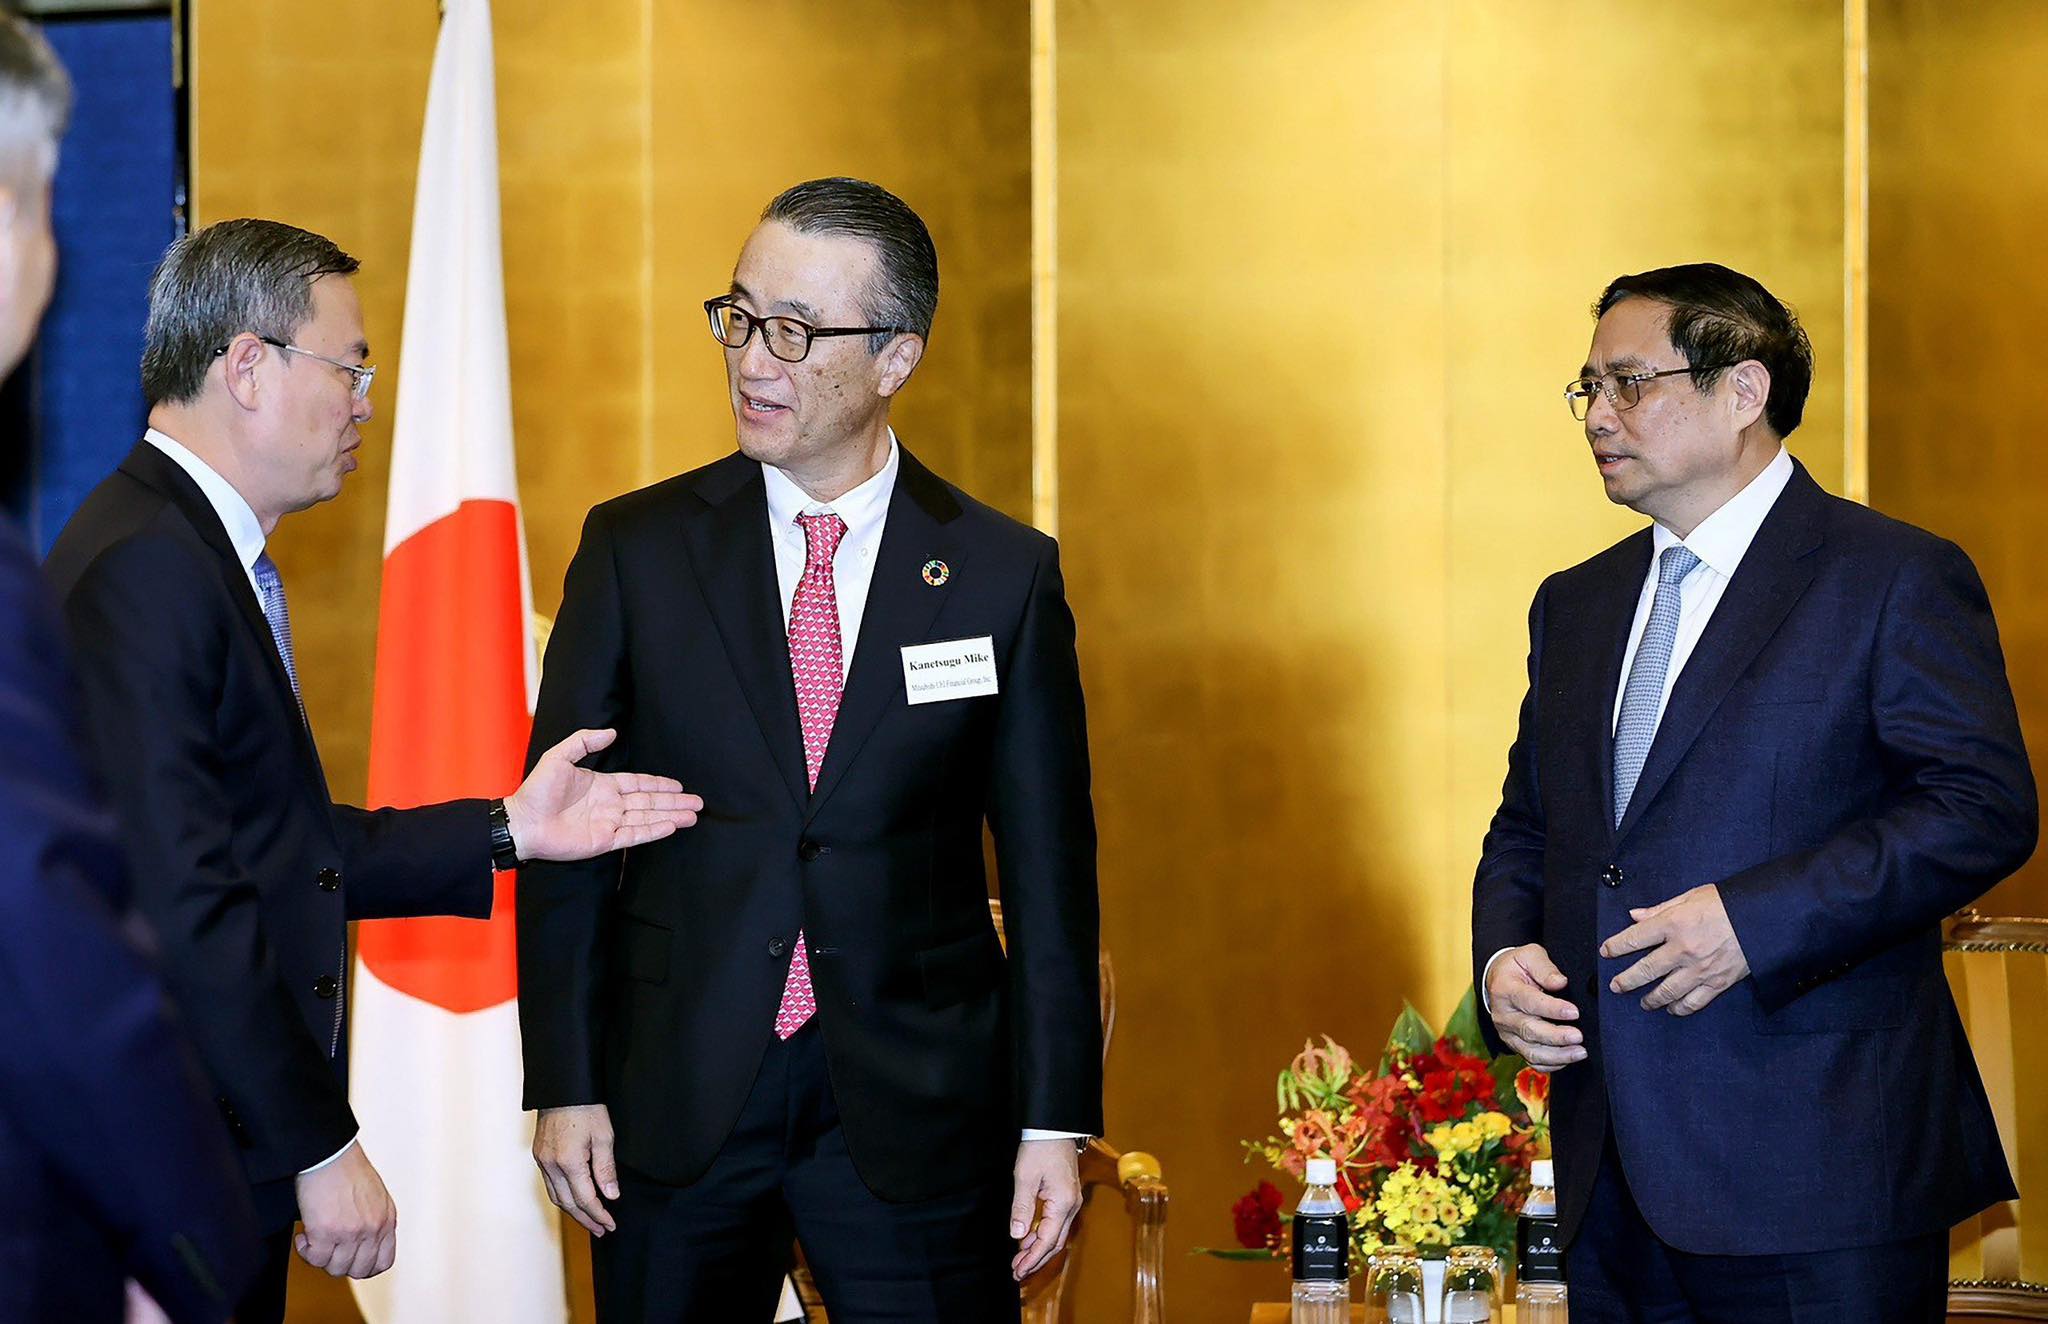 Kinh tế - VietinBank phối hợp tổ chức Tọa đàm của Thủ tướng Chính phủ với các tập đoàn Nhật Bản (Hình 3).